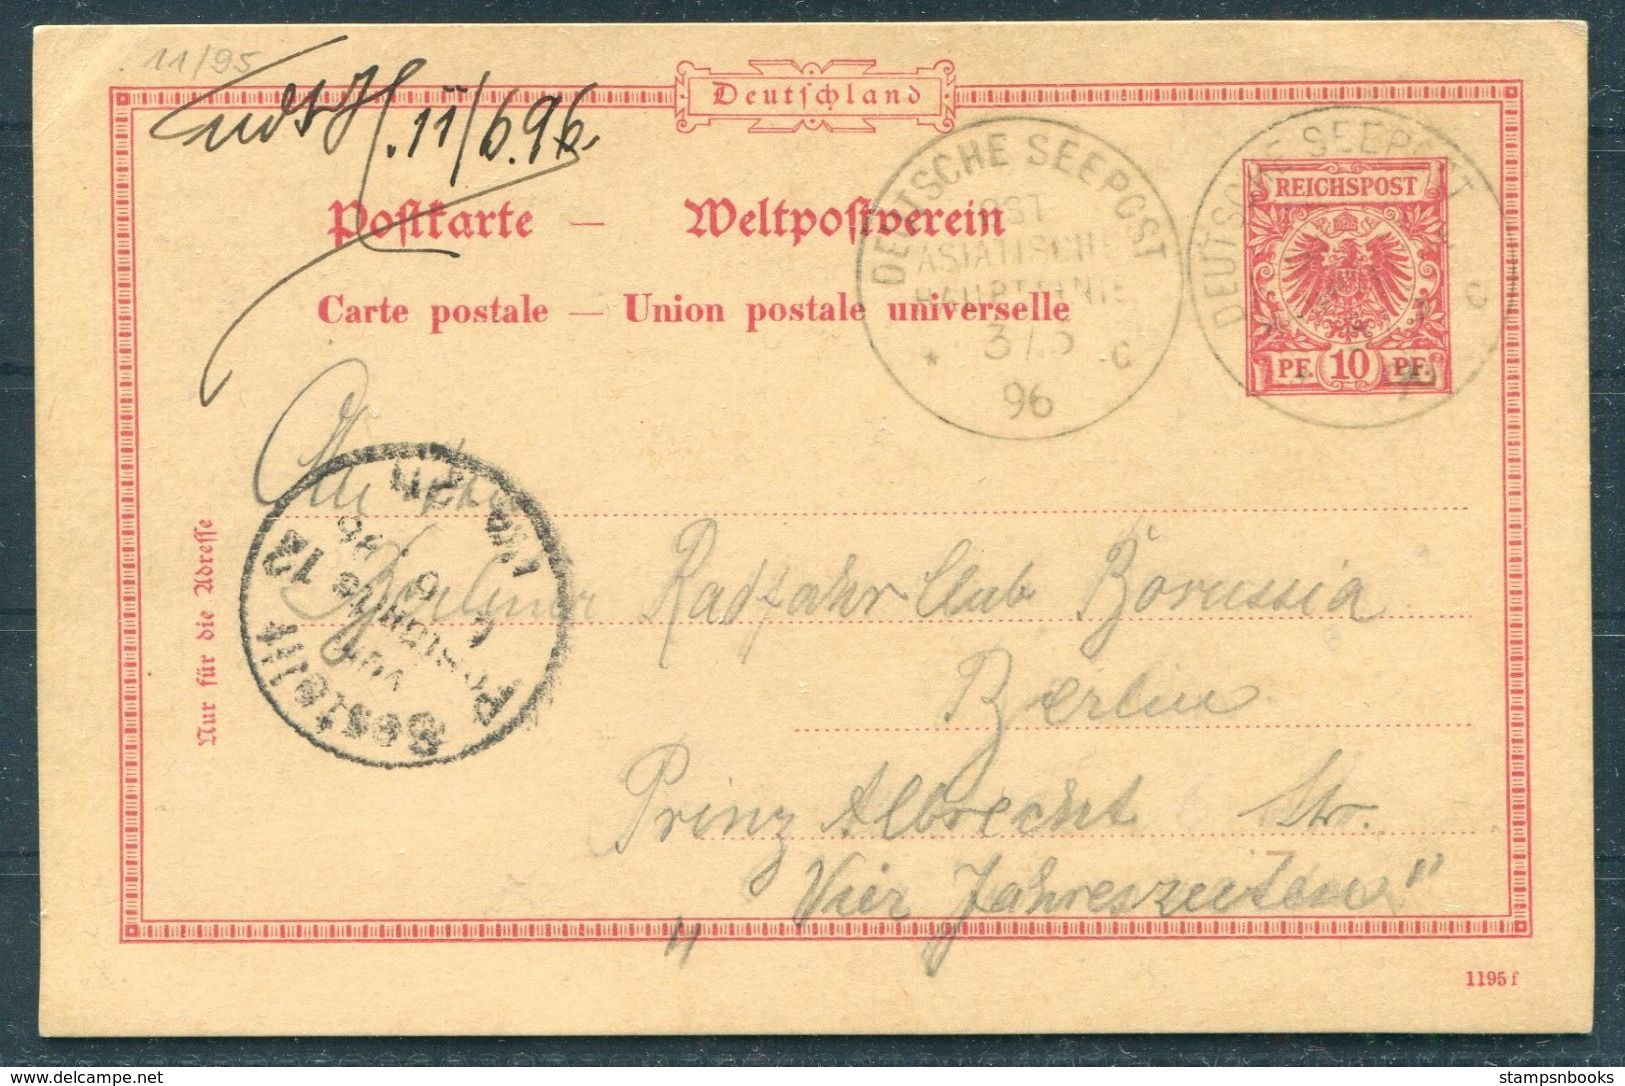 1896 China Germany Stationery Postcard, Deutsche Seepost - Berlin. Ship OSTASIATISCHE HAUBTLINIE - Cartas & Documentos